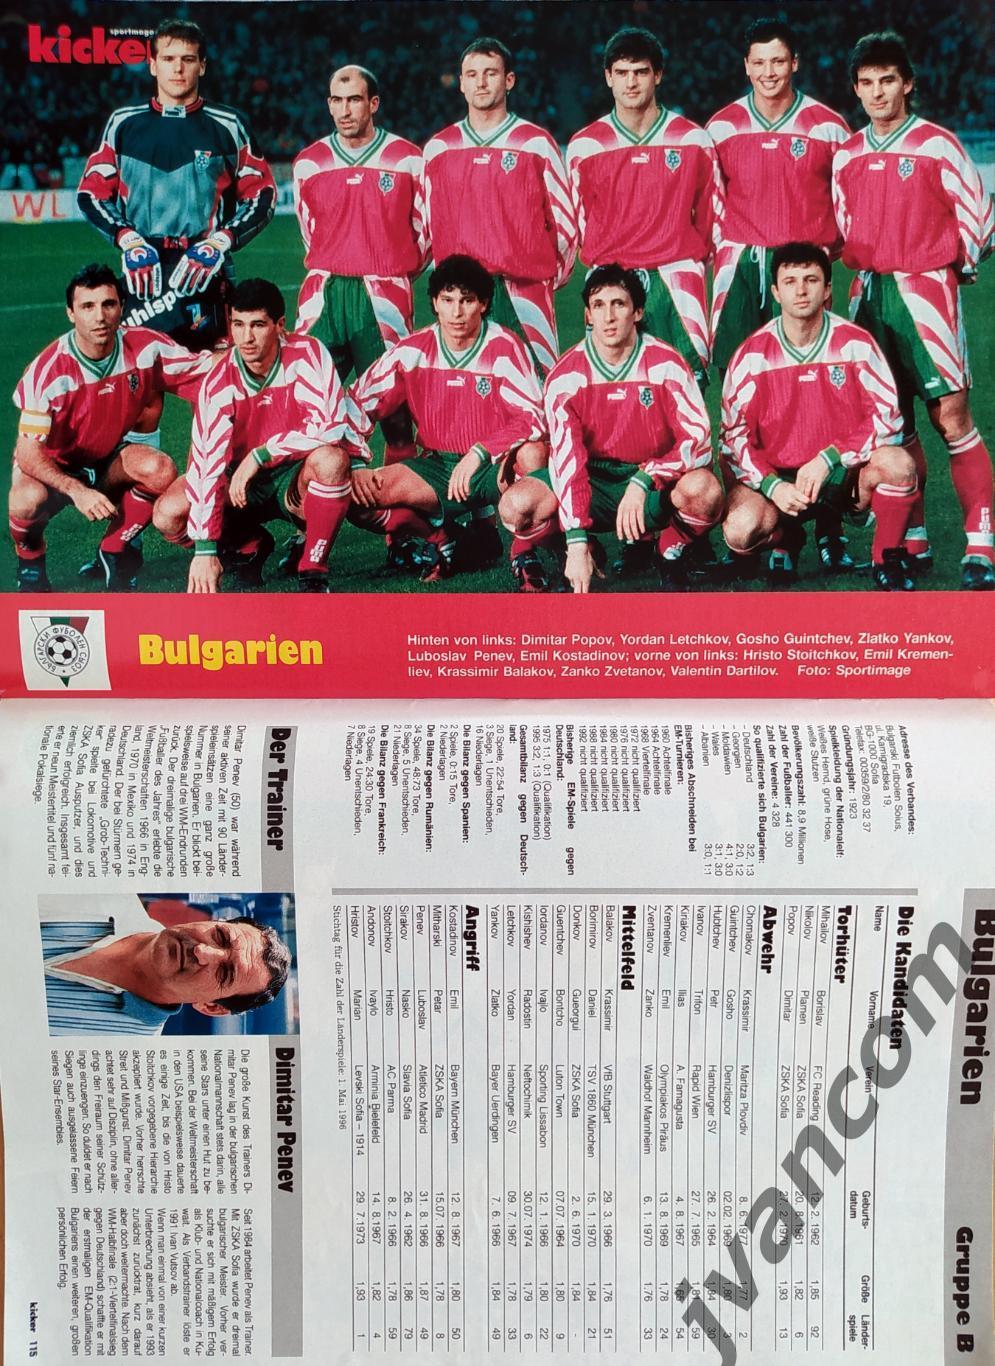 KICKER SONDERHEFT. Чемпионат Европы по футболу 1996 года. Превью участников. 4